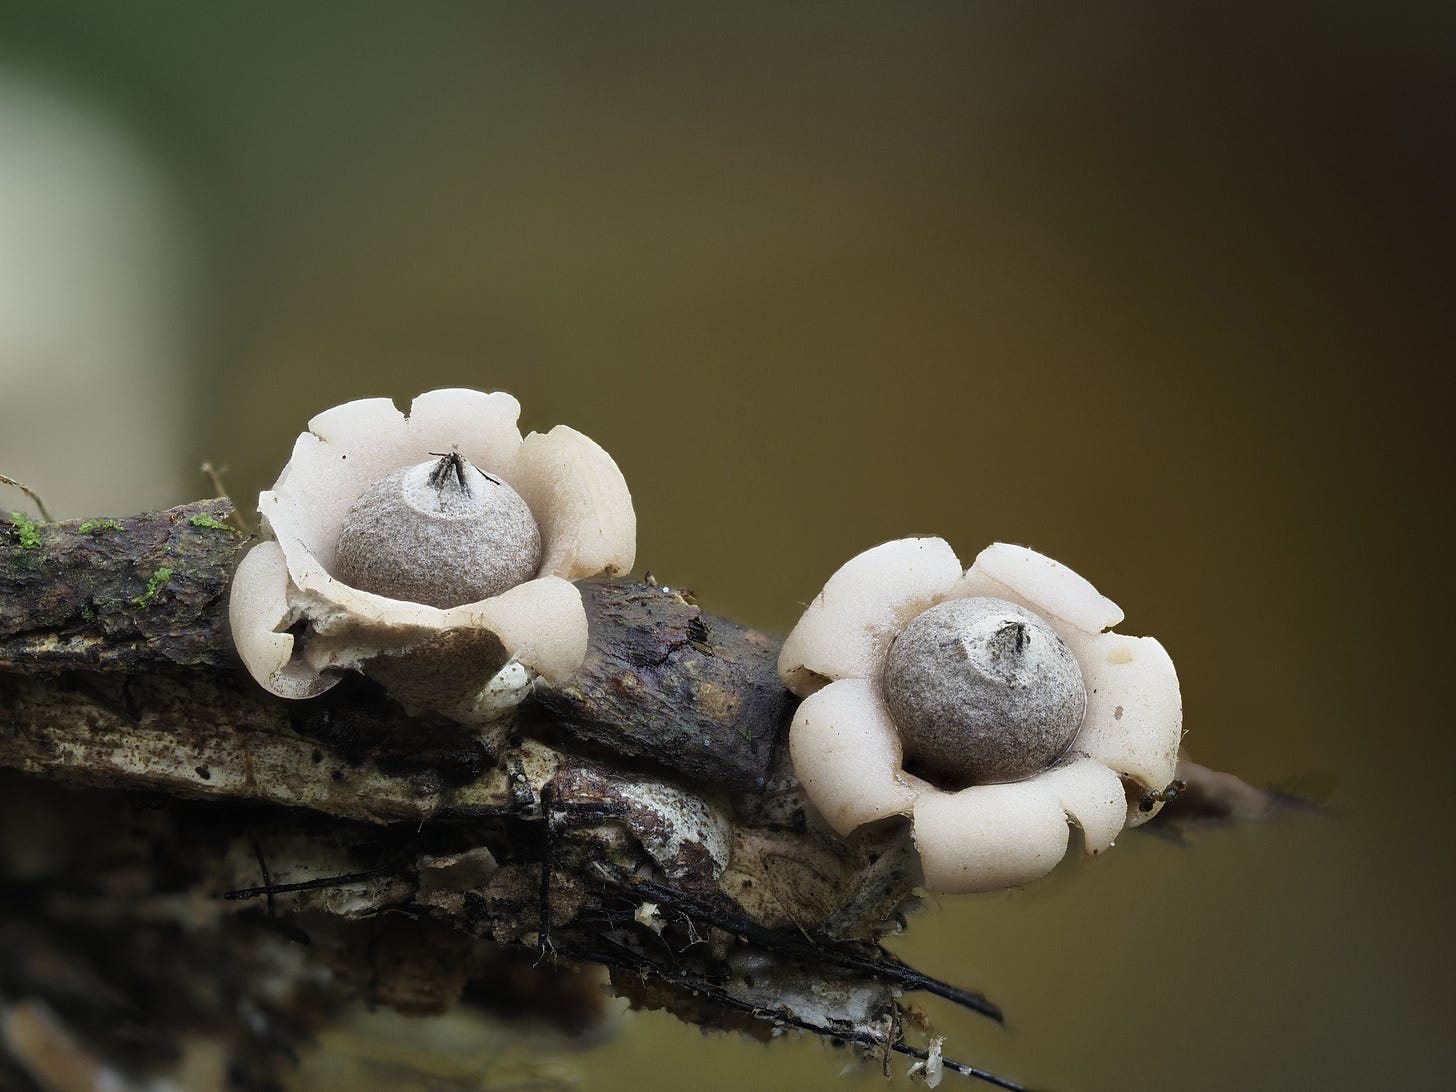 earthstar mushrooms